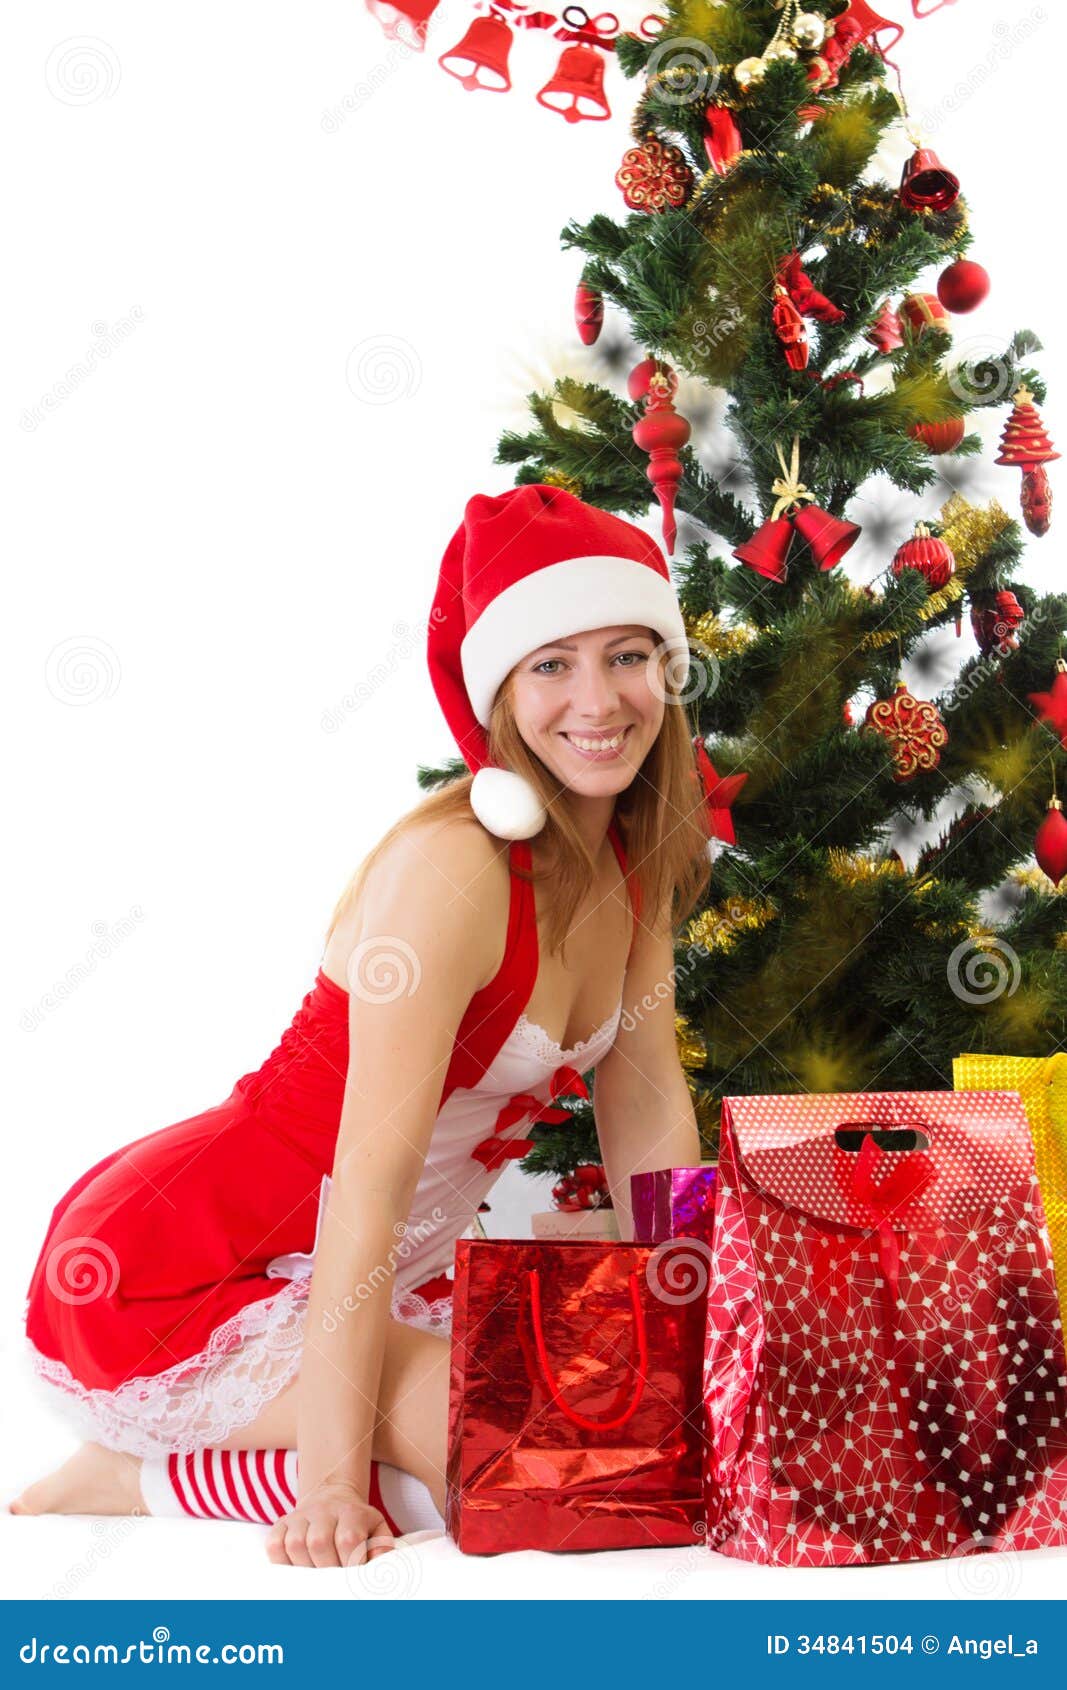 Foto Di Natale Con Donne.Donna Nella Seduta Rossa Sotto L Albero Di Natale Con I Regali Fotografia Stock Immagine Di Gioia Bellezza 34841504